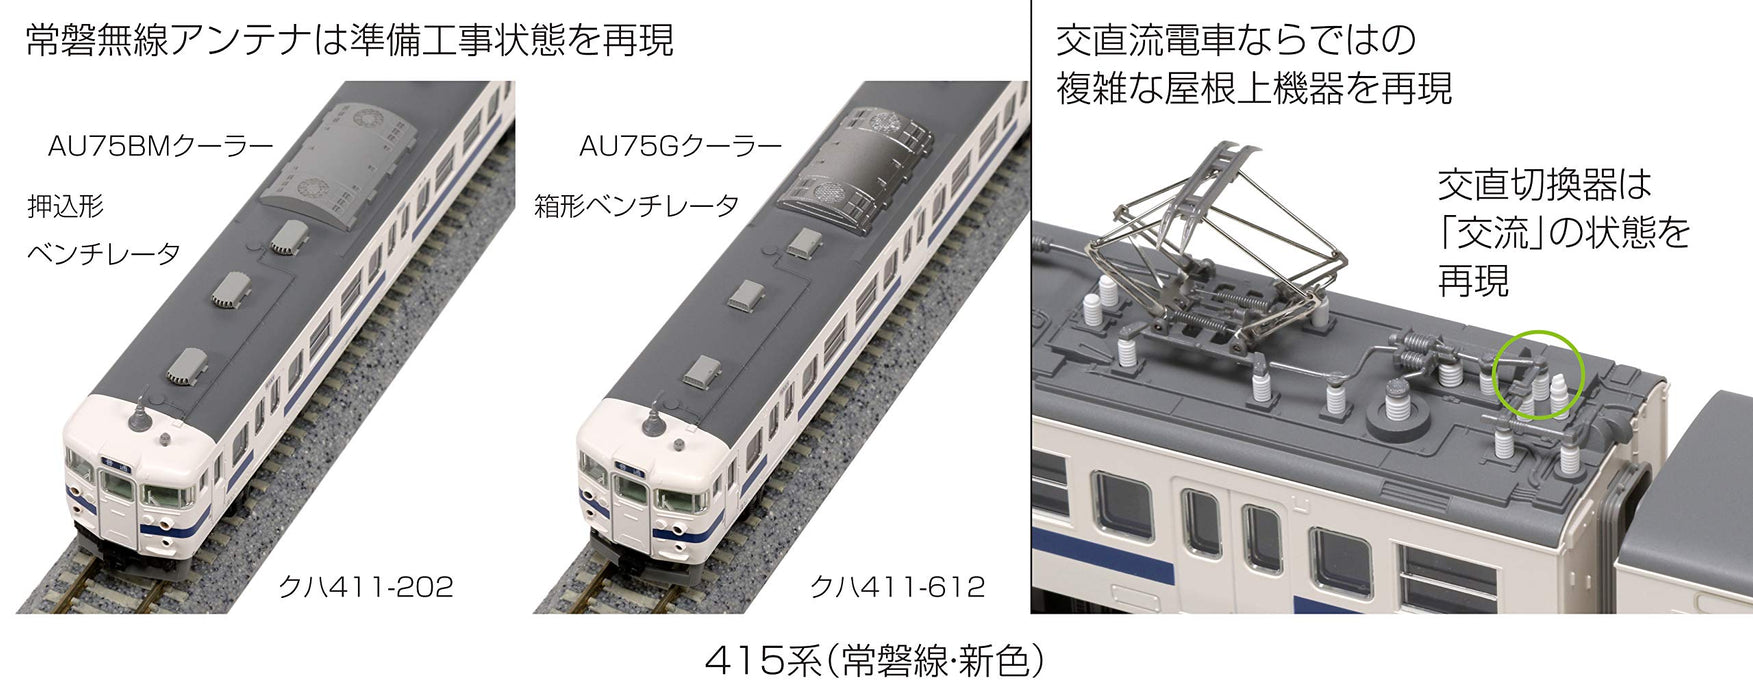 Kato N Spur 415 Serie Joban Line 4-Wagen-Set 10-1537 Eisenbahn-Modellzug, neue Farbe